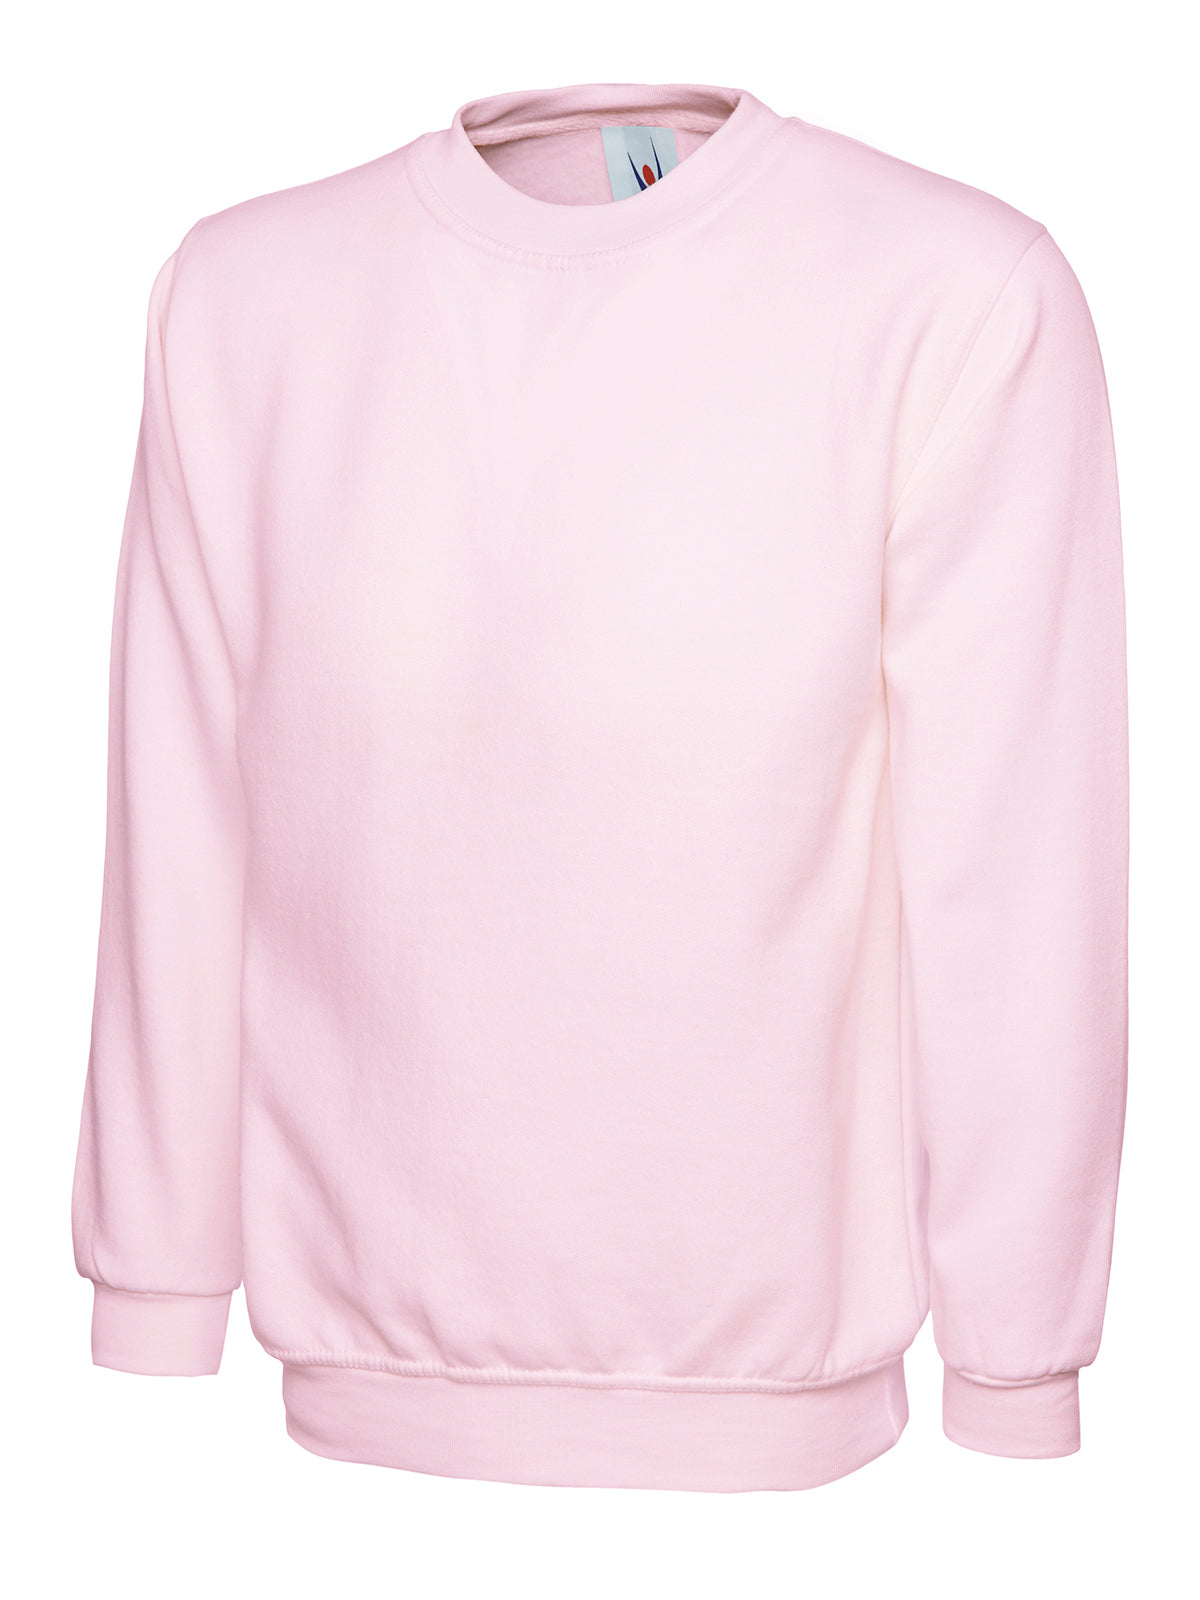 Uneek Classic Unisex Work Sweatshirt UC203 - Pink